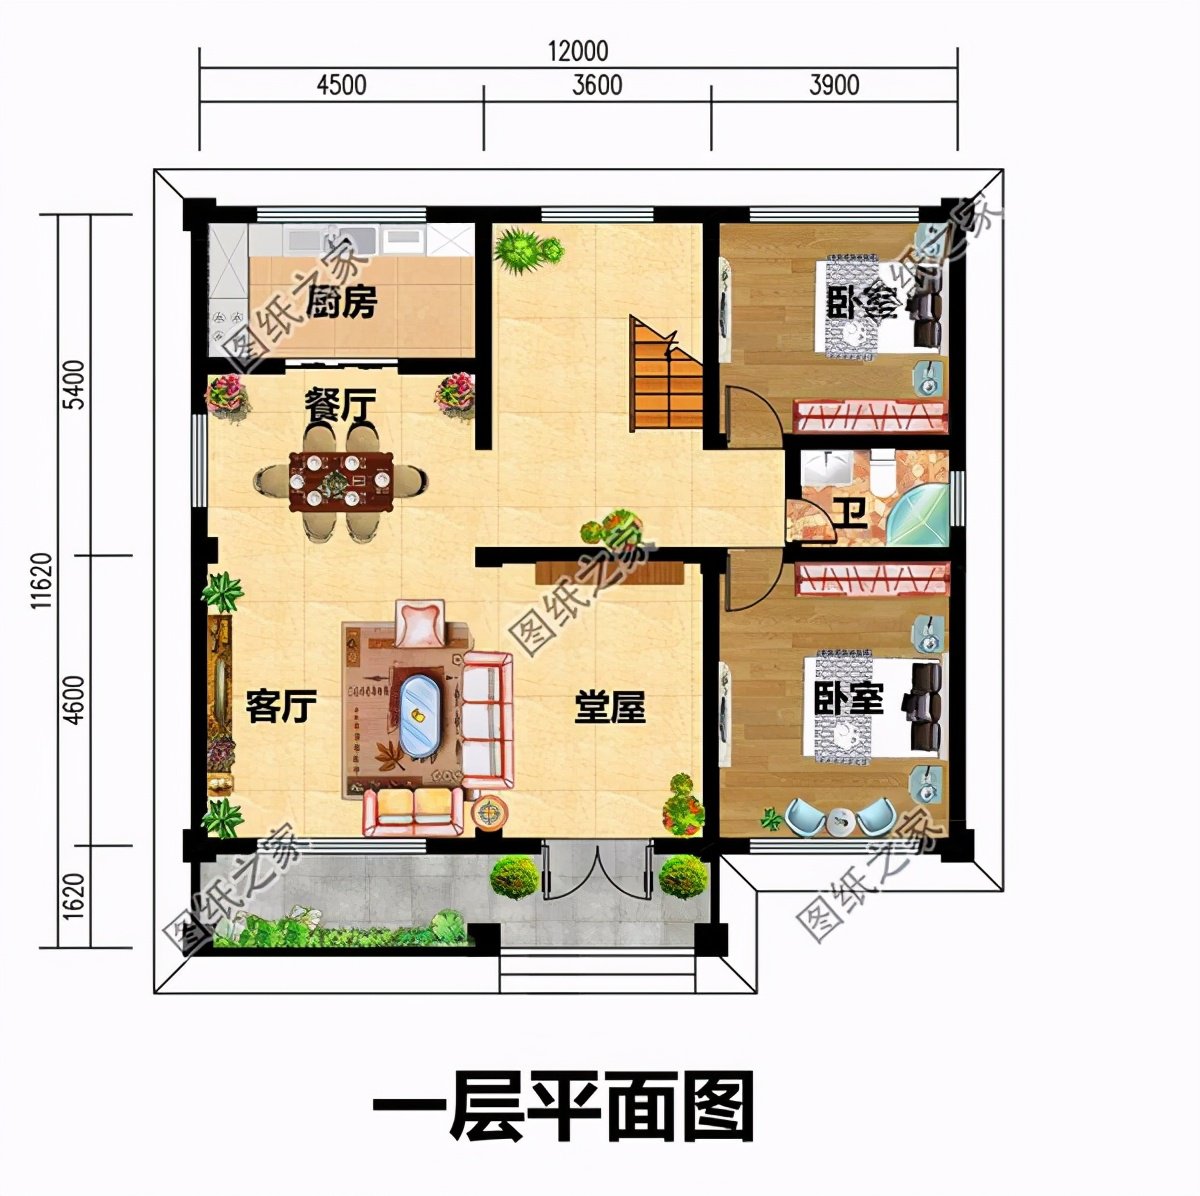 12米×12米建房设计图,有露台设计,农村建房就盖这样的户型